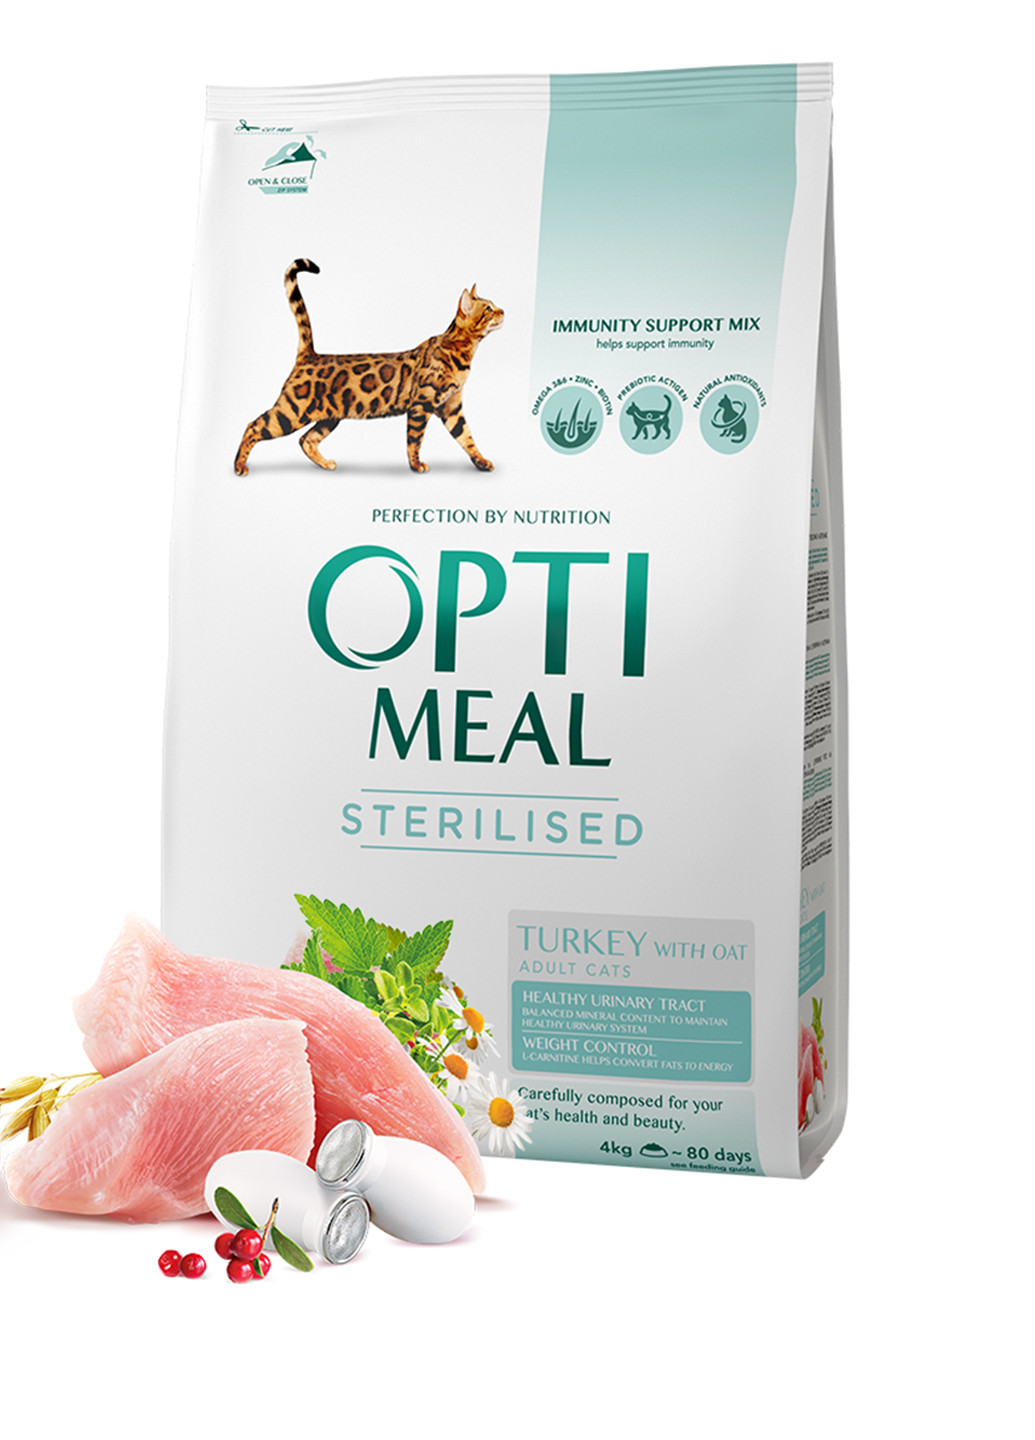 Сухой корм для стерилизованных кошек и кастрированных котов Индейка и овес, 4 кг Optimeal (140312073)